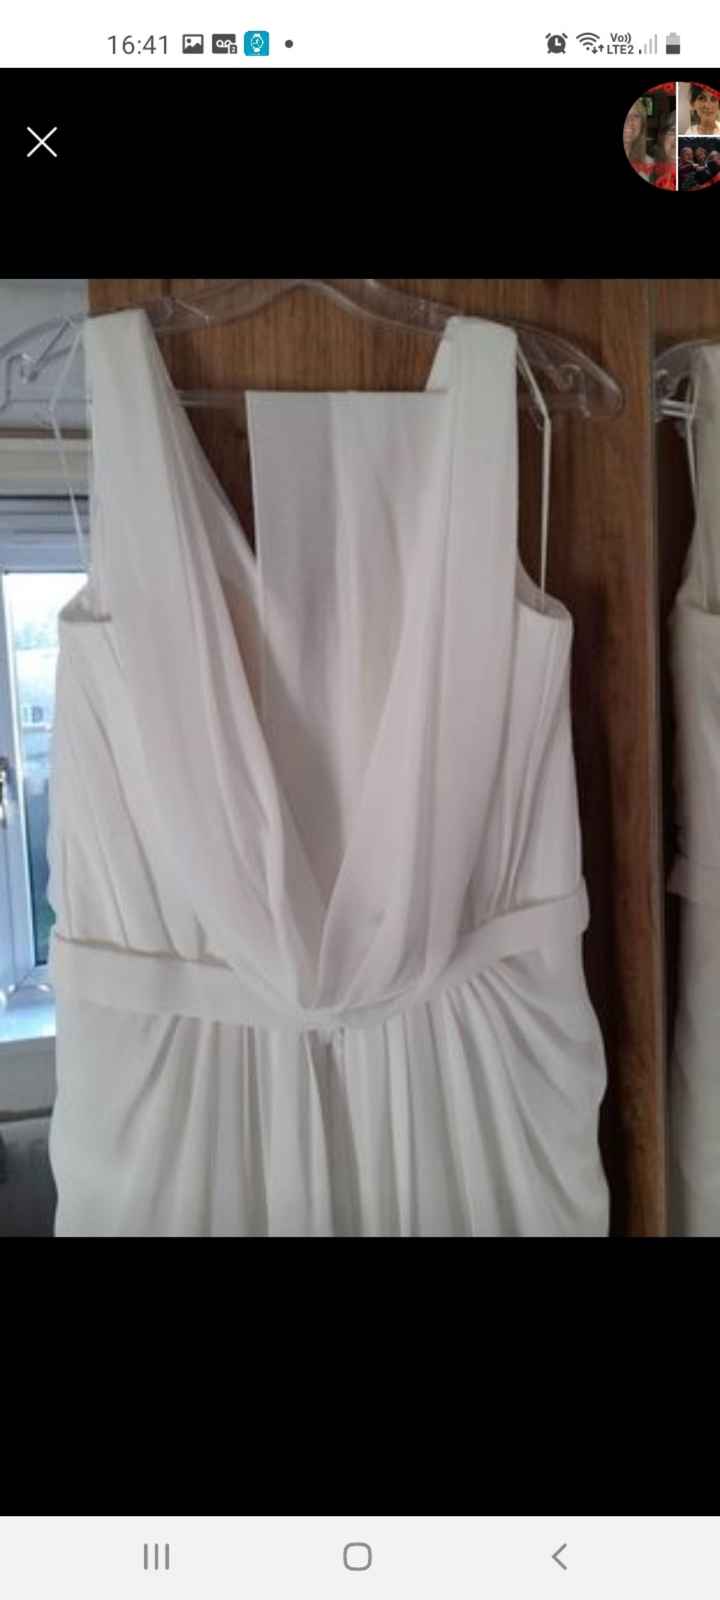 White chiffon dress £50 - 3